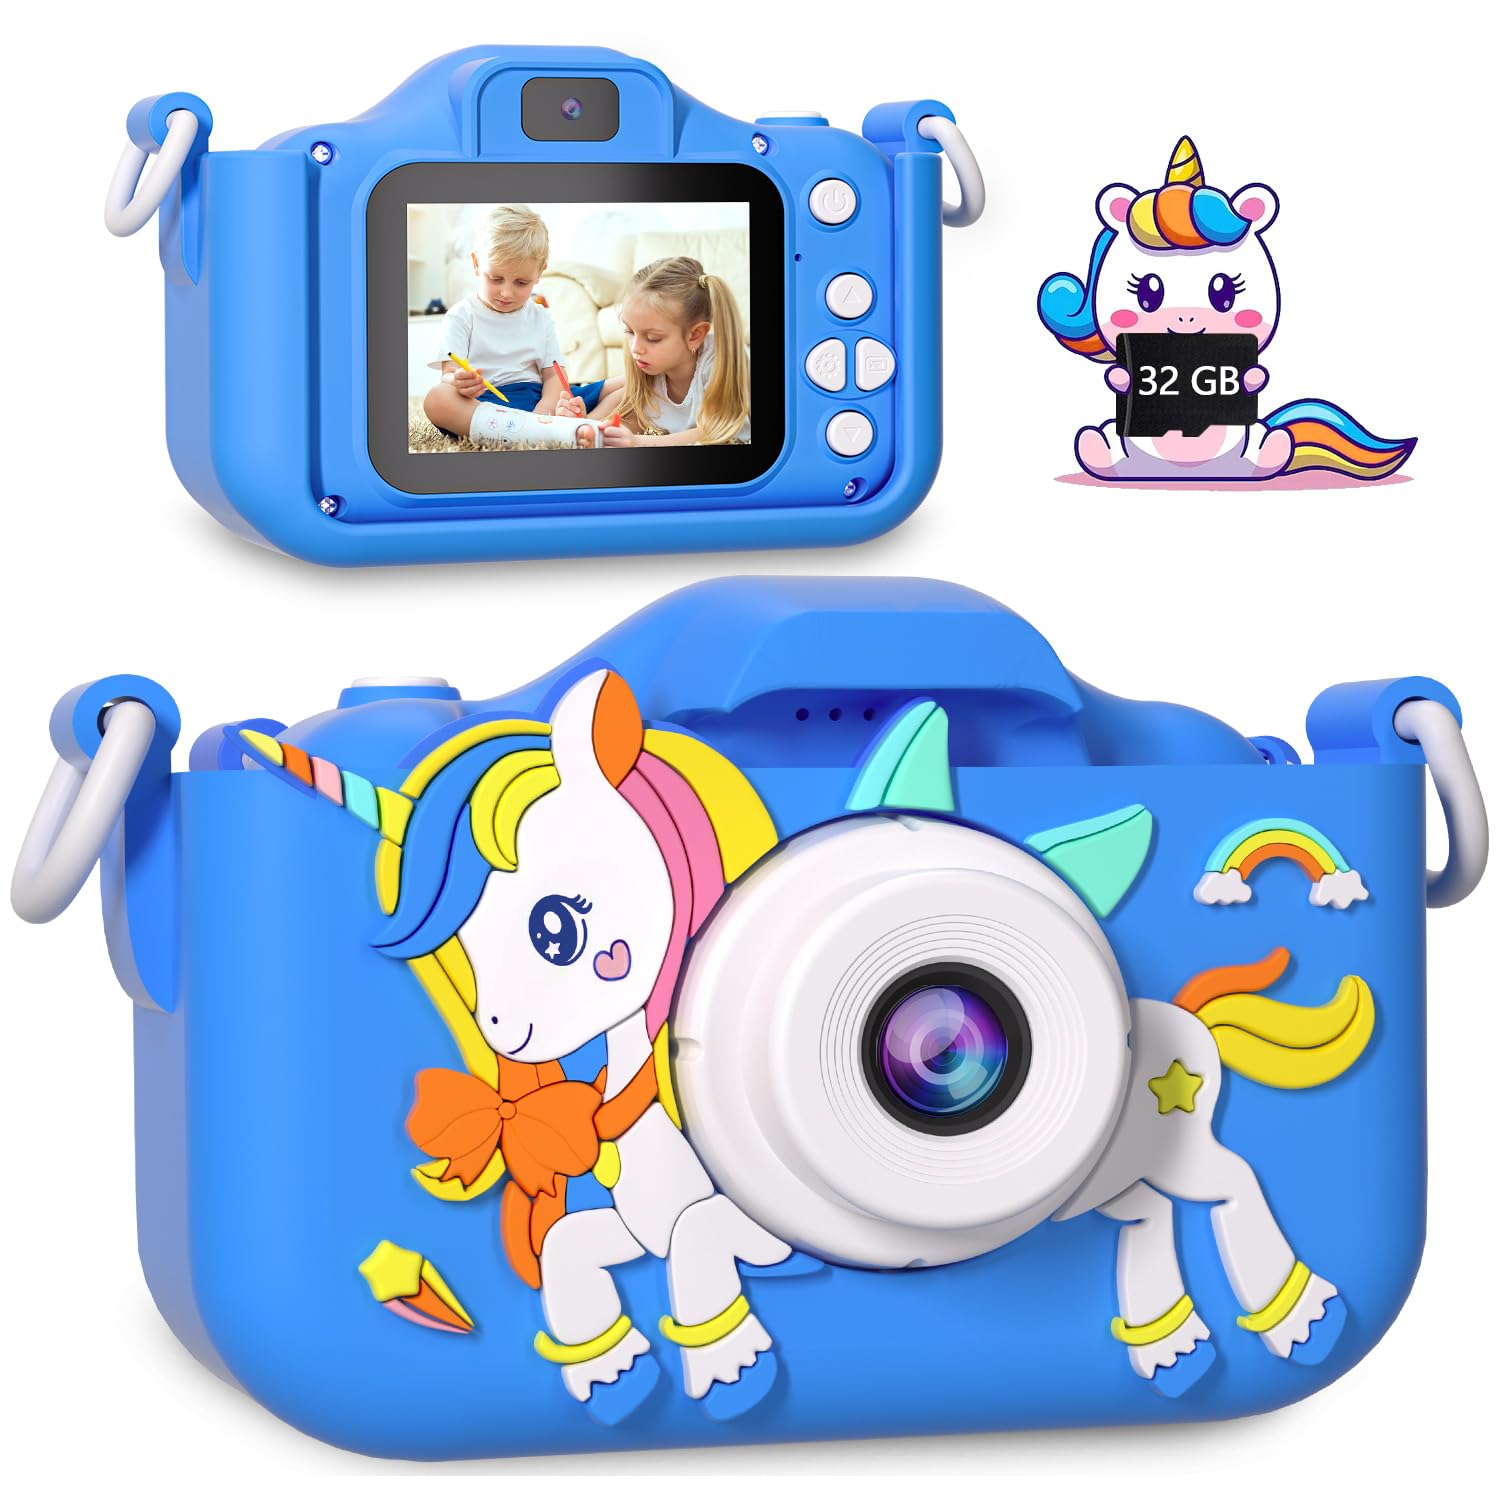 ・ブルー x19・・Color:ブルー・??保護シリコンケース付属2023年の新しいデザイン- 子供用カメラシリコンソフトケース、子供の握力を鍛え、使用中に子供がぶつかったり落ちたりするのを効果的に防ぎます。同色のストラップが付属しており、子供の手を解放し、自由に楽しく遊びながら写真撮影の楽しさを満喫できます。また、カメラの紛失も防止できます。・??多機能キッズカメラ面白い写真を撮ったり、ビデオを録画したりできます。写真を撮っていないときは、子供用デジタルカメラで小さなゲームをしたり、音楽を聴いたり、リラックスしたりすることもできます。タイムスタンプやタイミング撮影を設定し、大切な瞬間をすべて記録します。USBデータケーブルを使い、カメラをコンピュータに接続することで、お子様の楽しい思い出を大切にし、家族や友人と共有することができます。・??シンプルで使いやすい子供用カメラはレトロなピクセルに焦点を当てており、上下ボタンでフィルターやフォトフレーム、またはズームを切り替え、左ボタンで時間指定撮影、右ボタンで自撮りモードを切り替えることができ、小さな写真家の